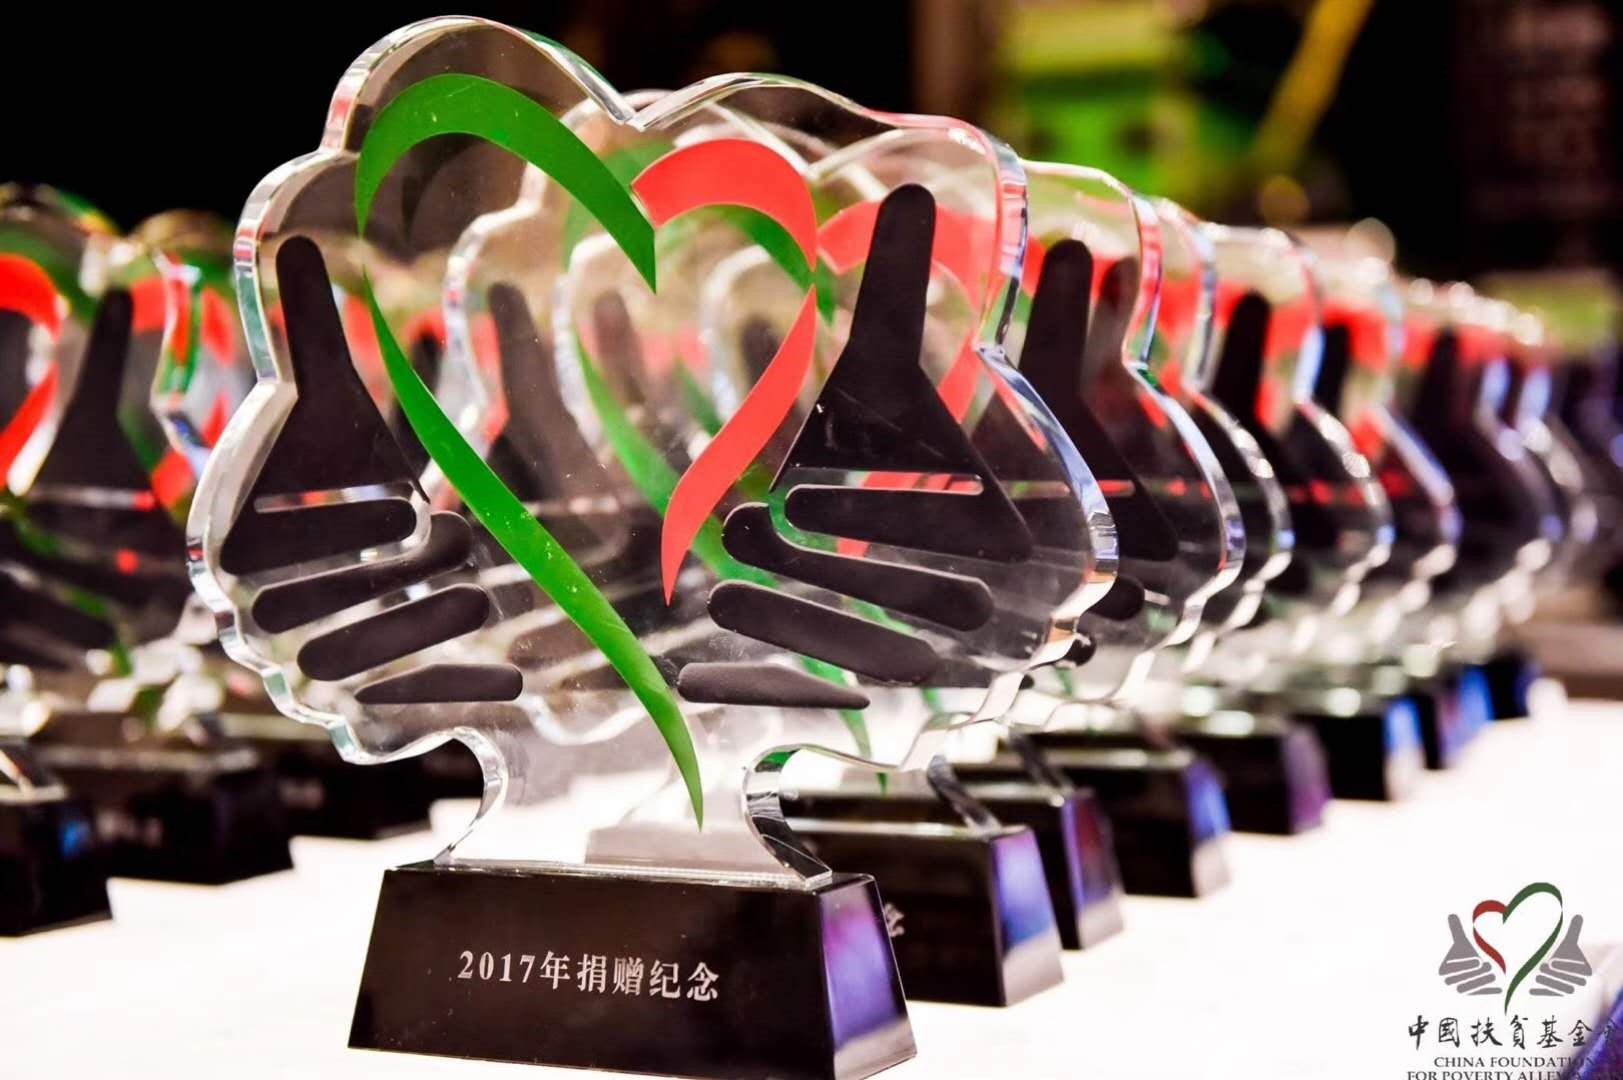 NU SKIN 如新集团第五次荣获中国扶贫基金会“年度杰出贡献奖”